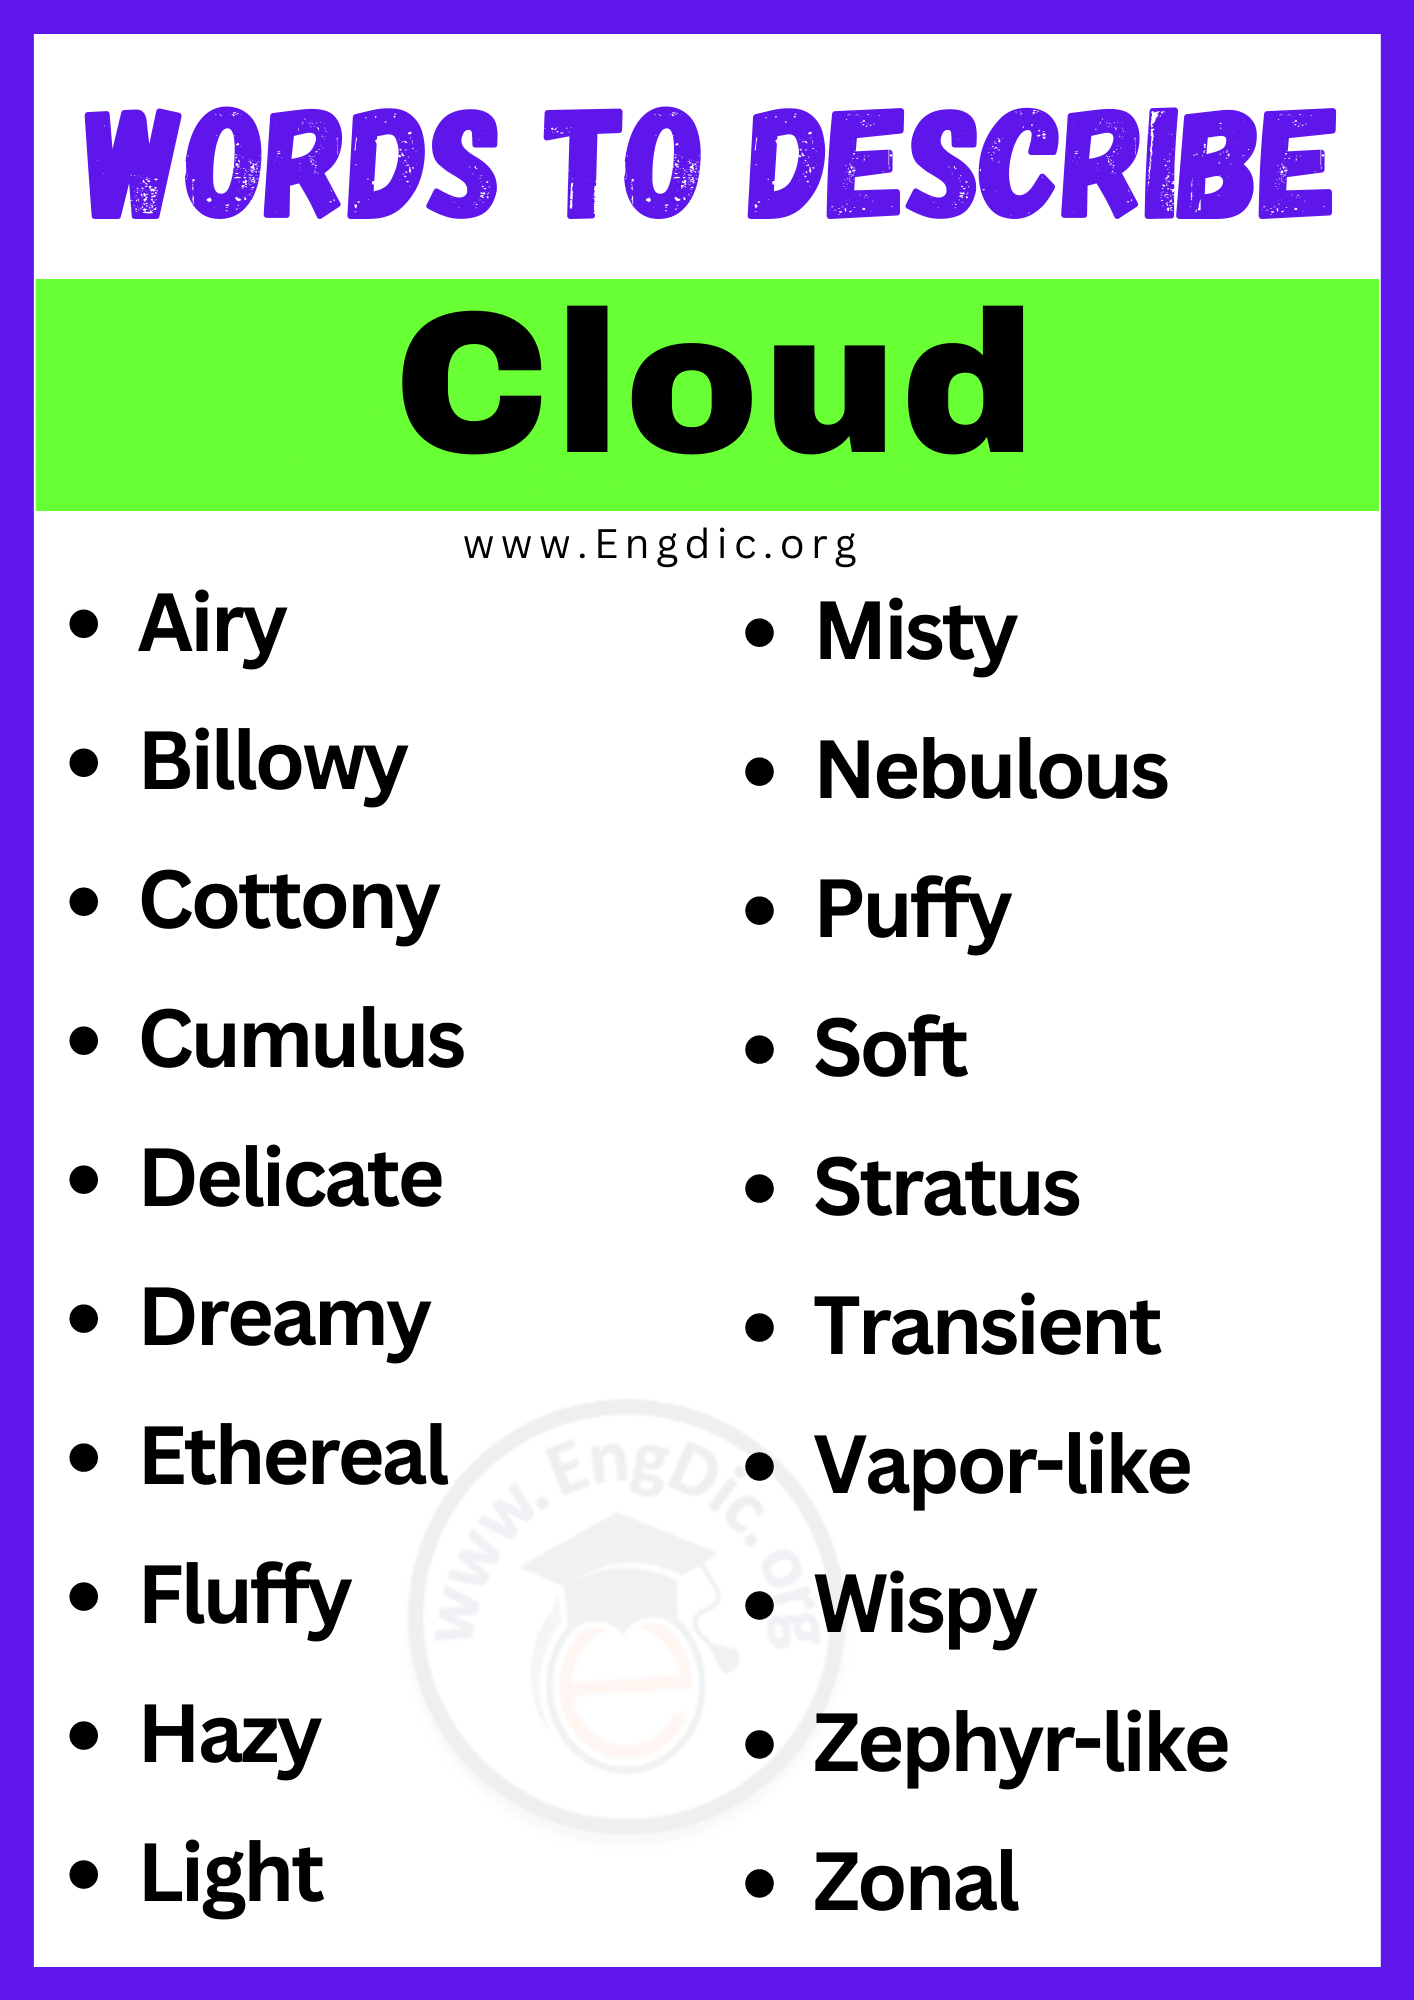 Words to Describe Cloud